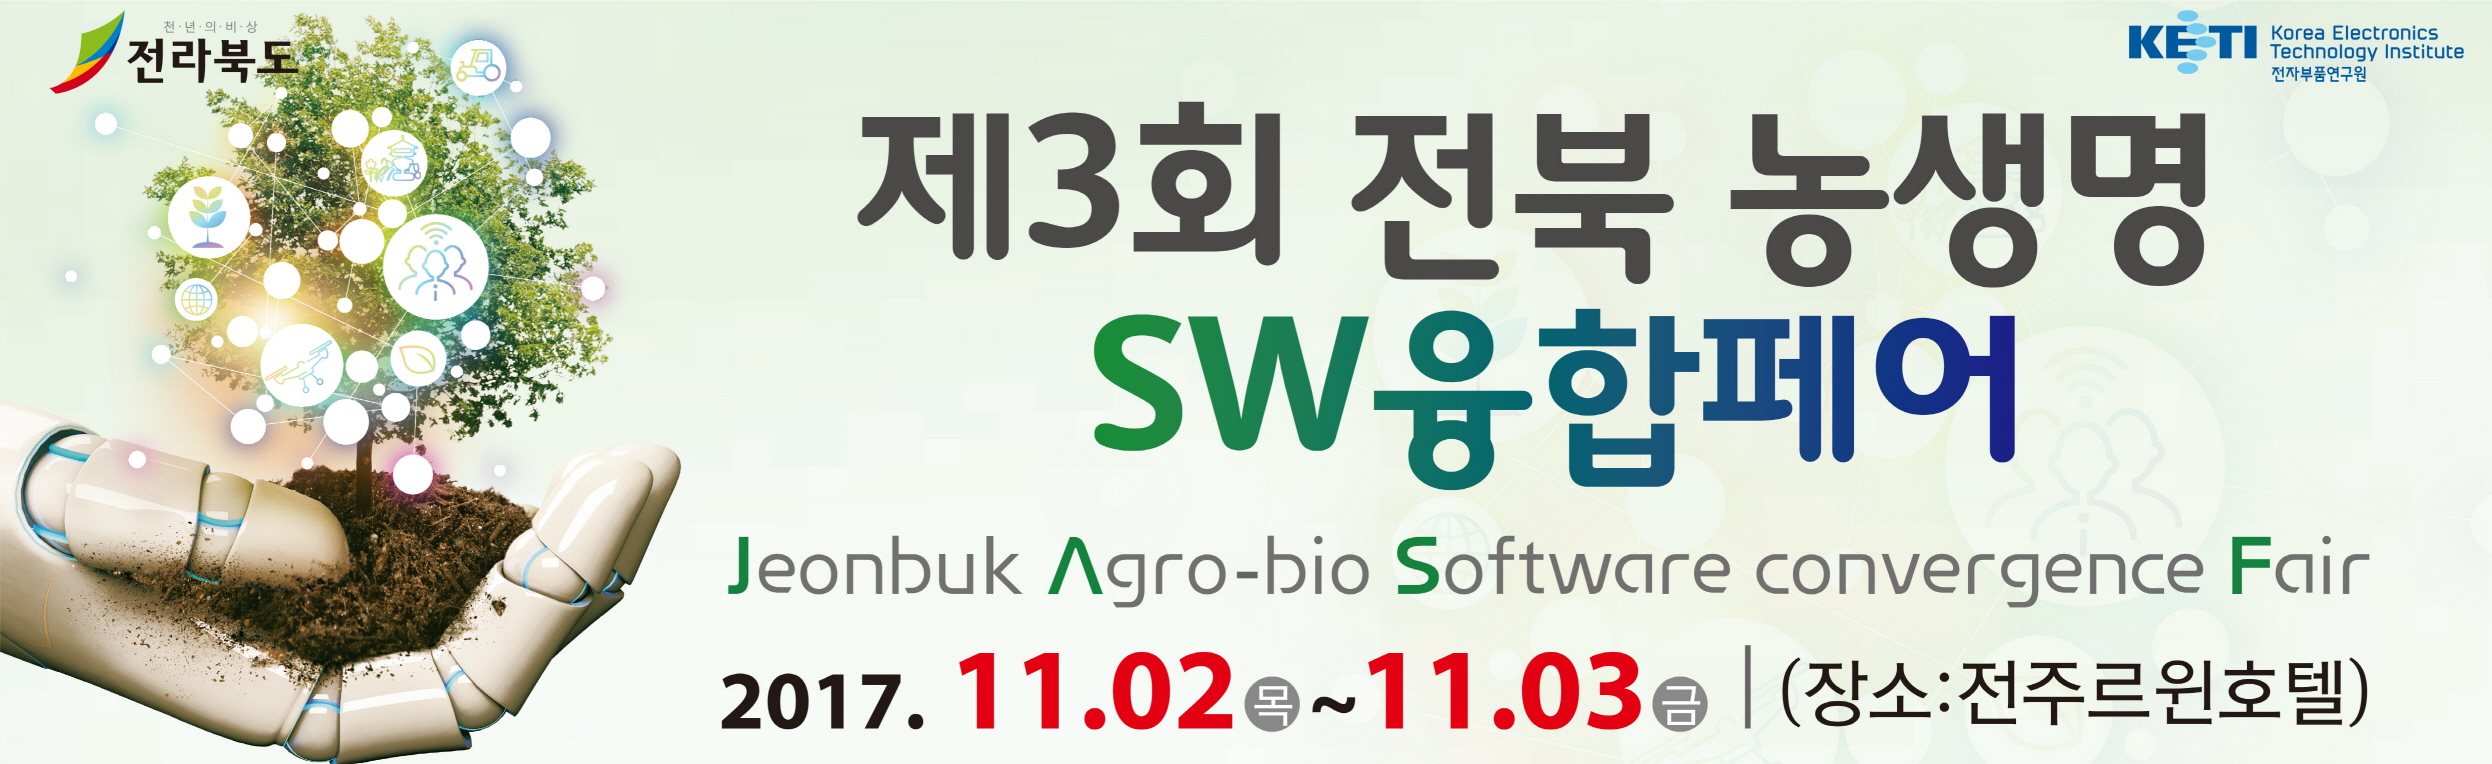 제3회 전북 농생명 소프트웨어 융합페어